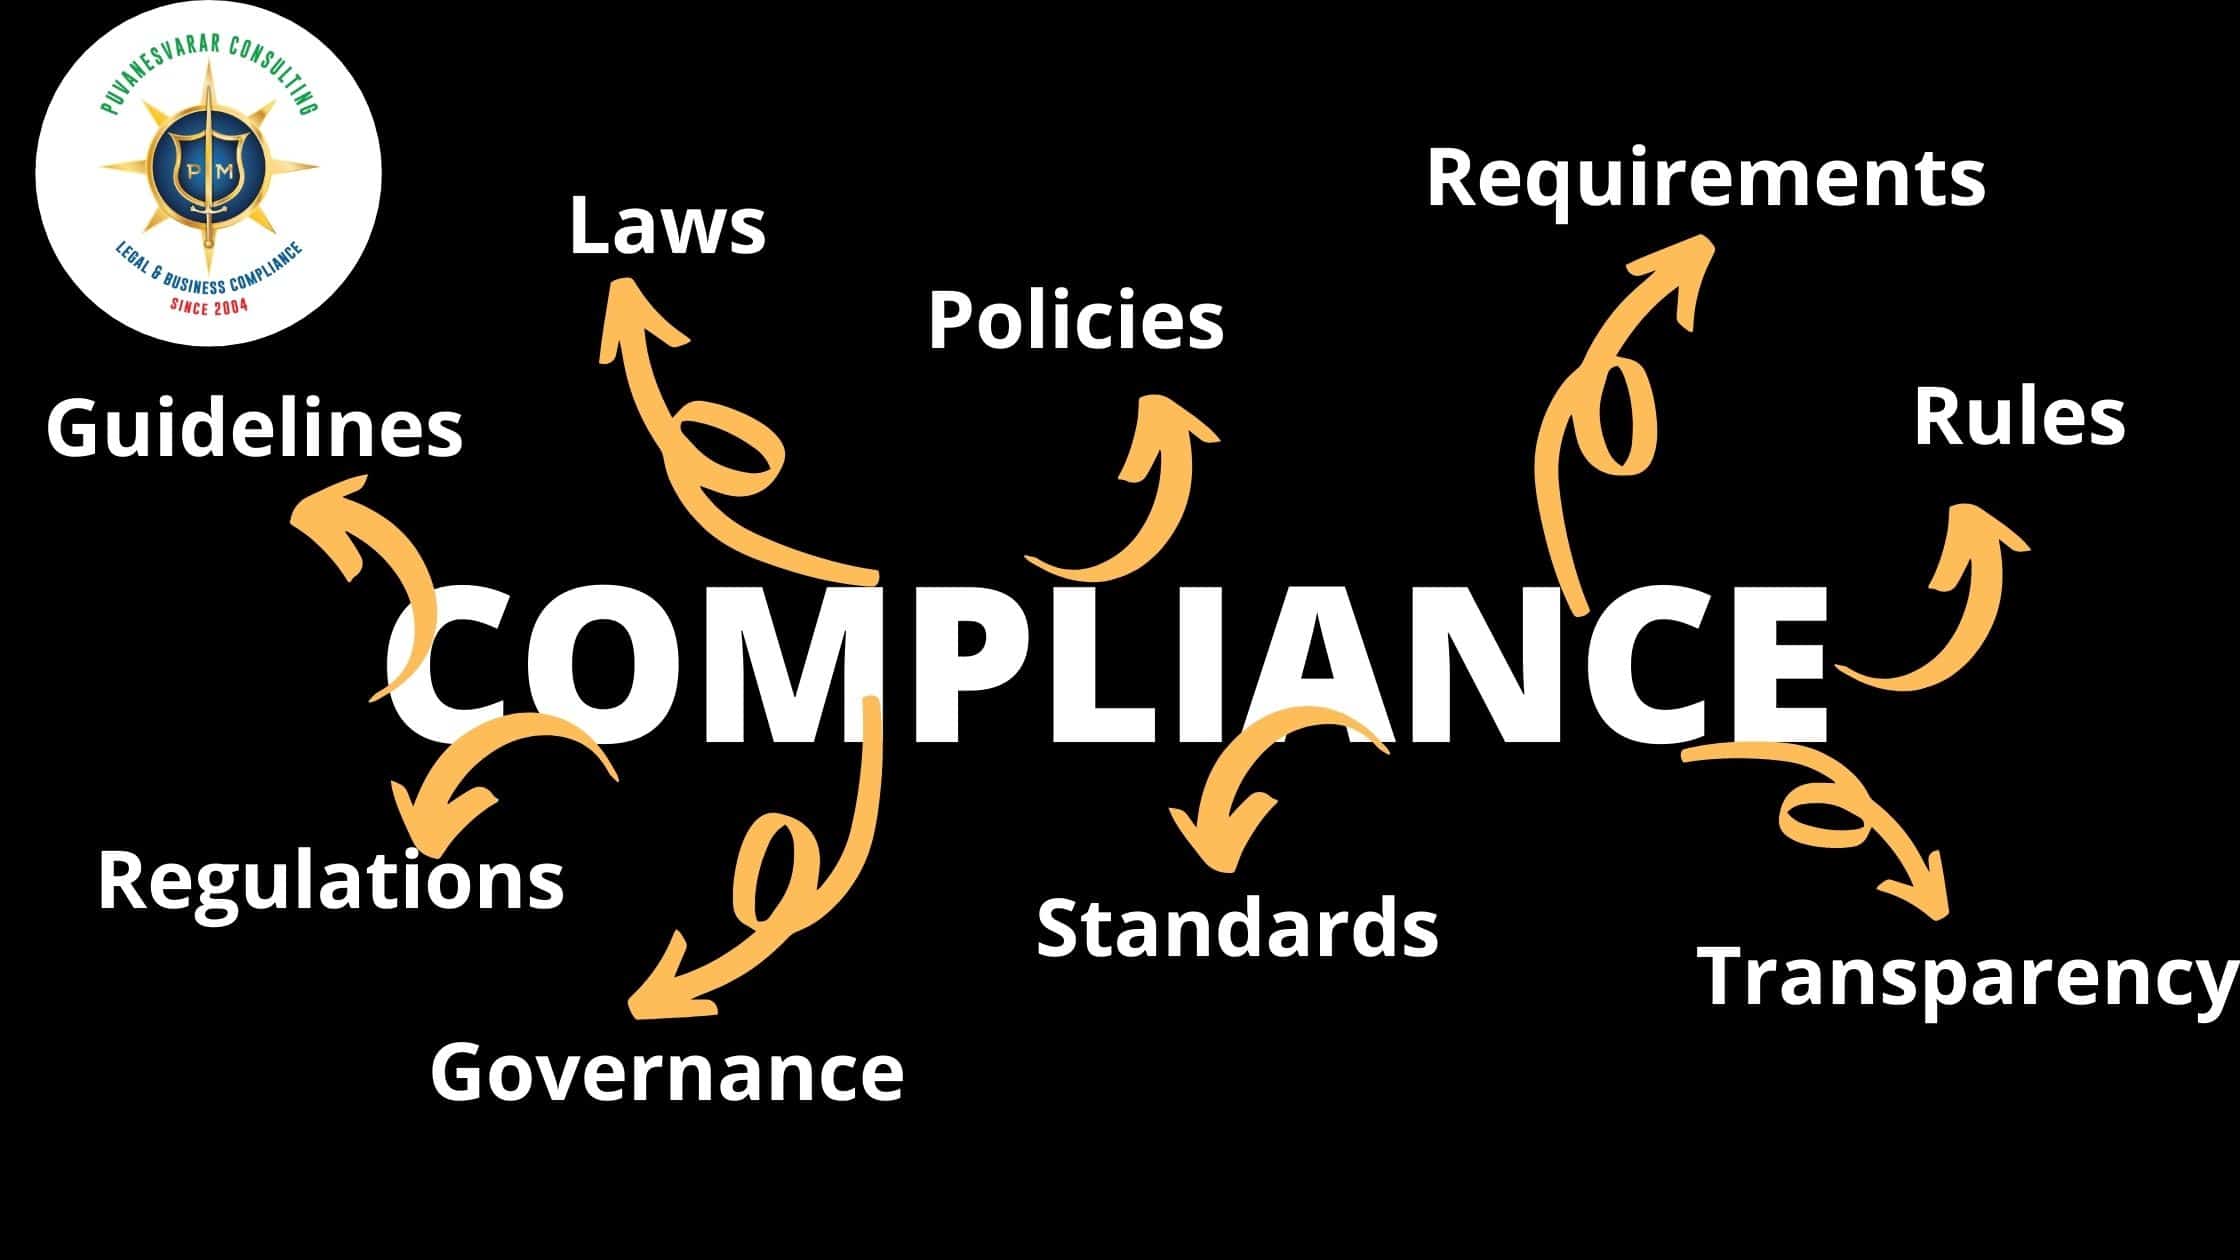 Regulatory compliance